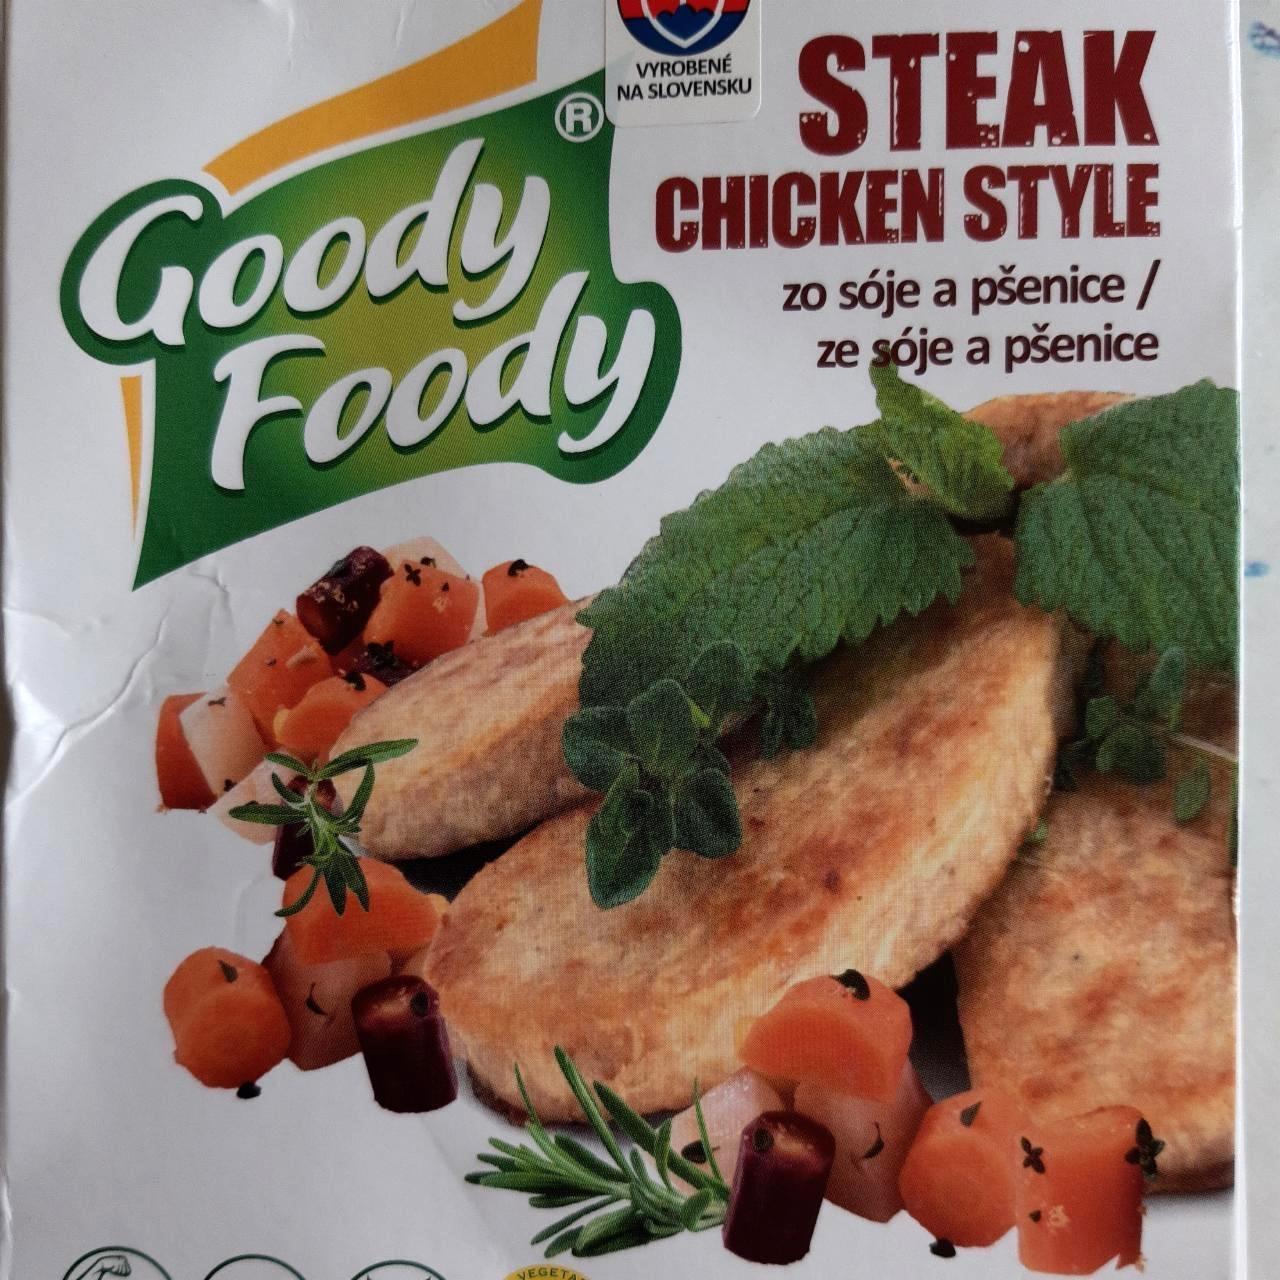 Képek - Steak chicken style Goody Foody